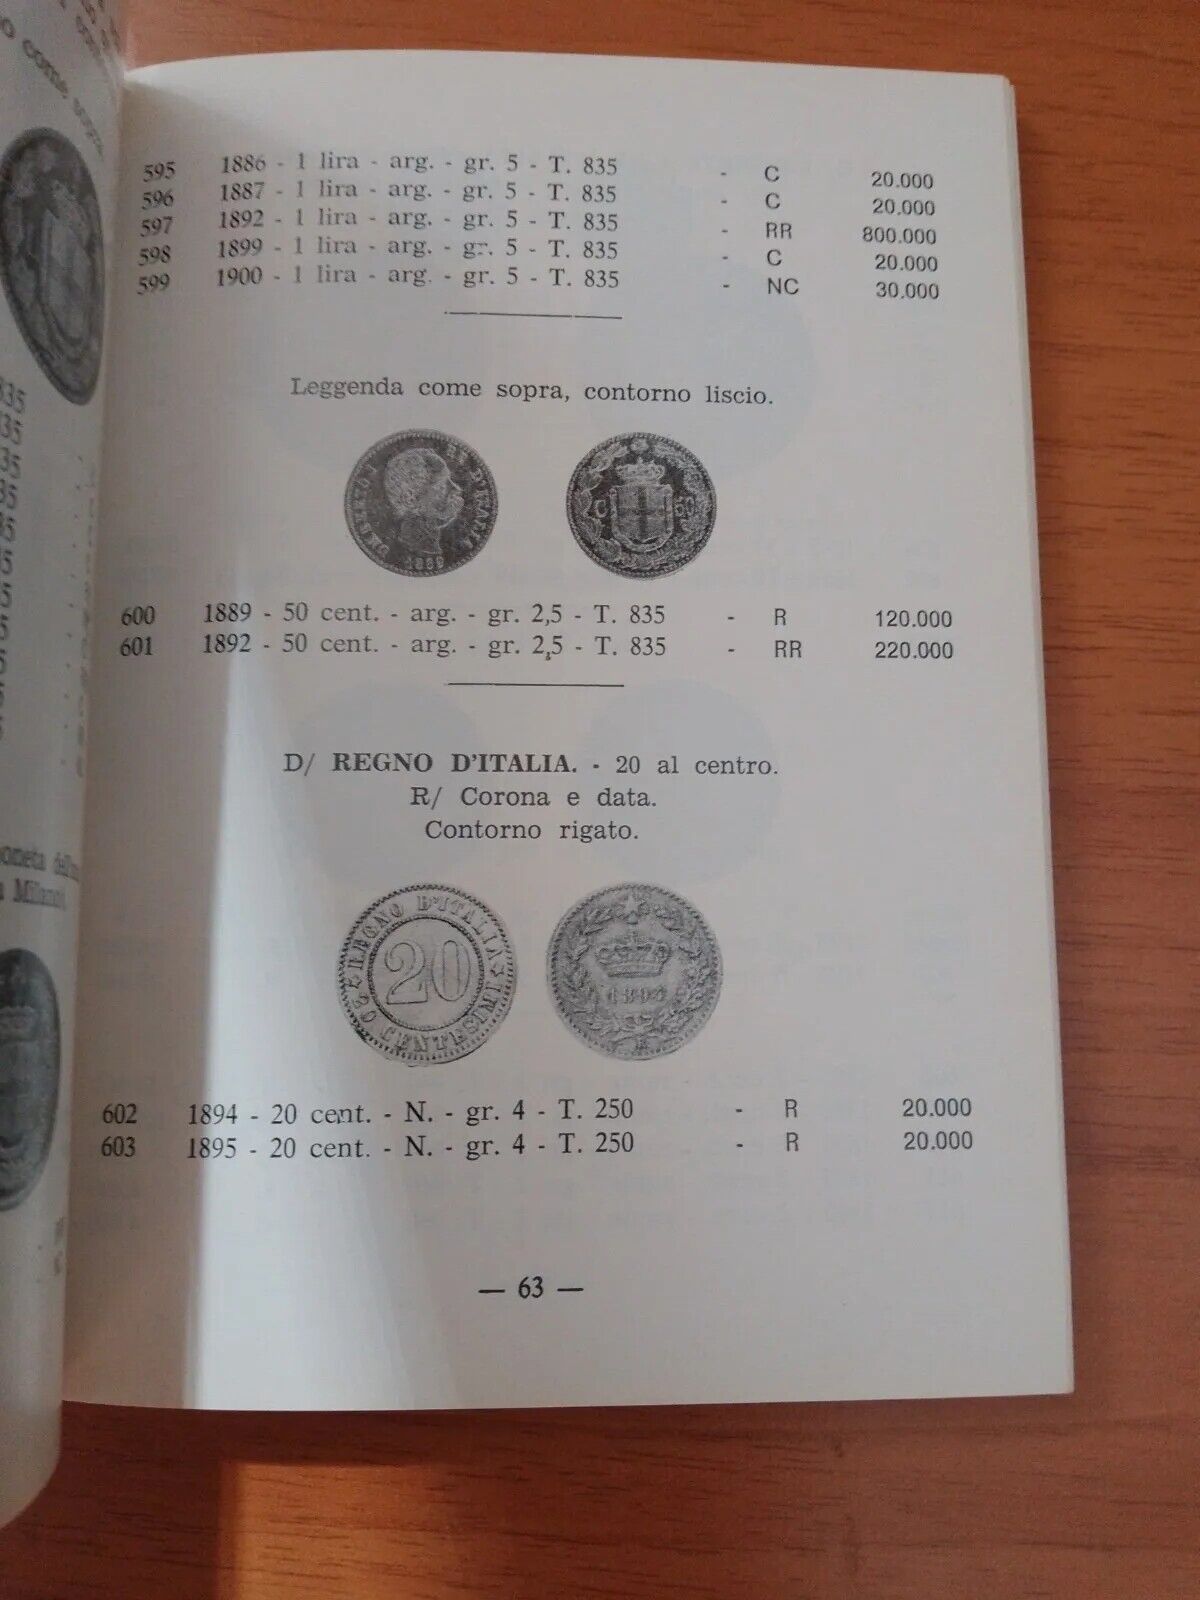 Monnaies italiennes - Catalogue 1978 - Frison